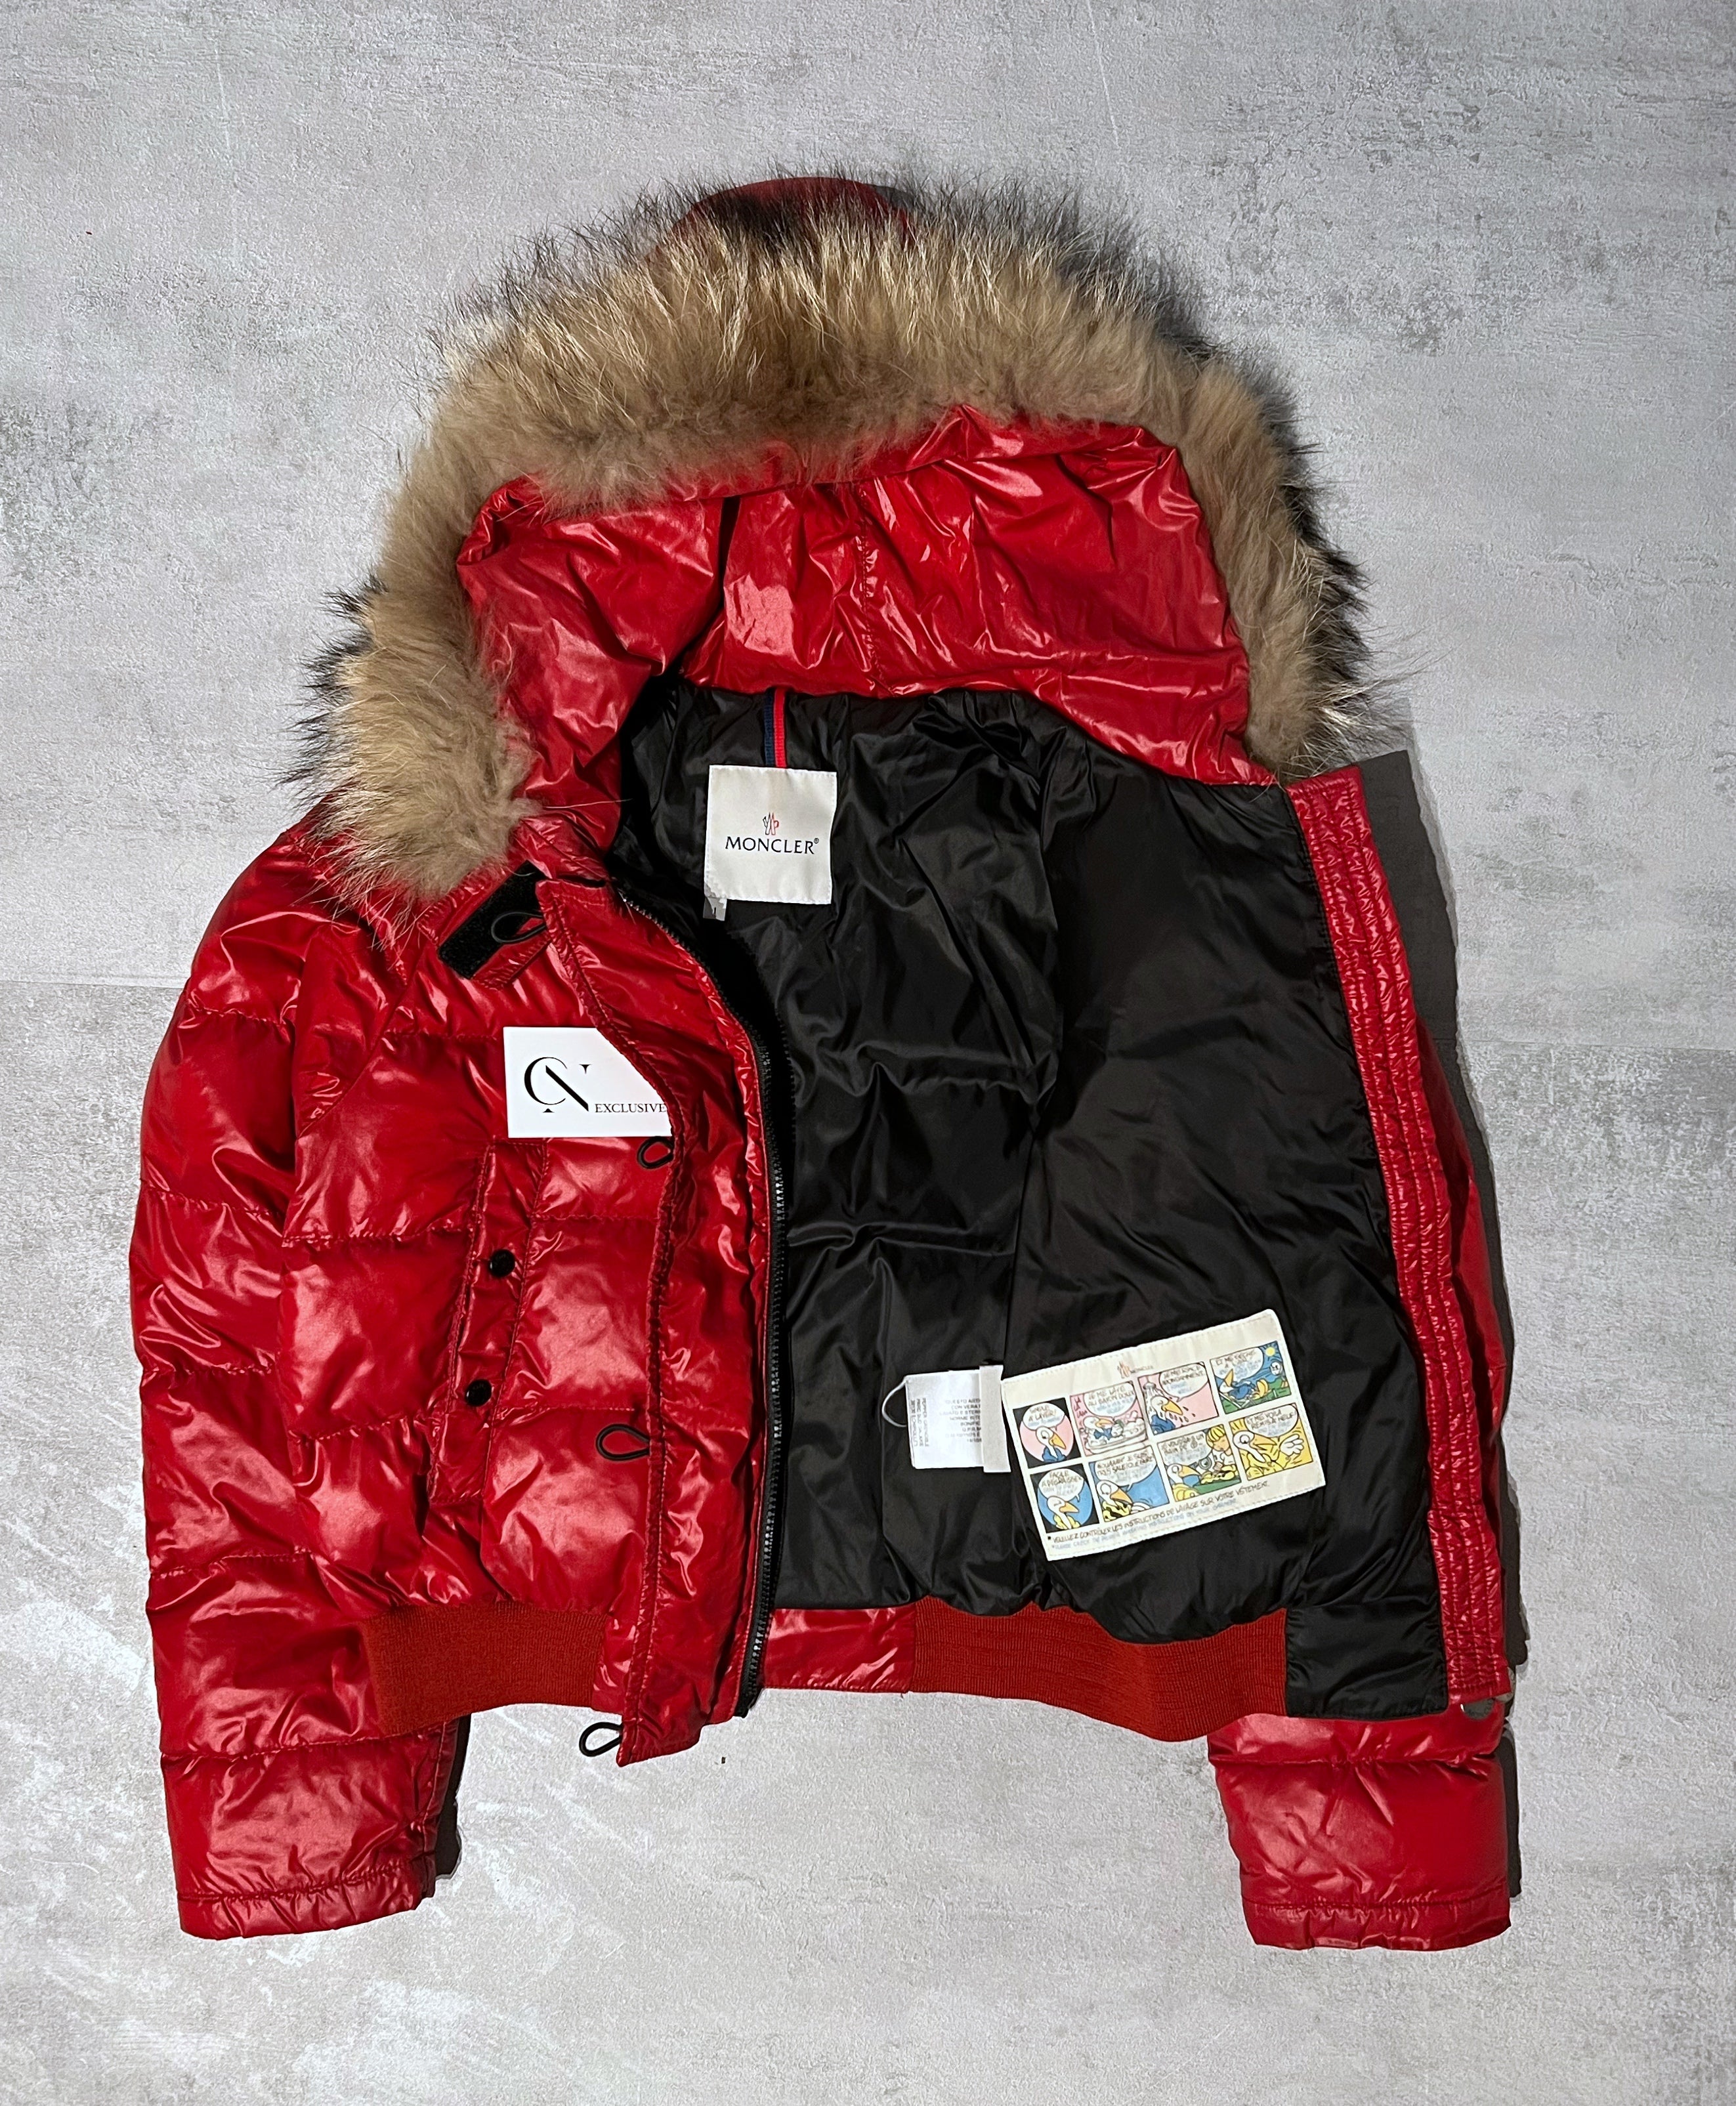 Moncler Alpin Ladies Jacket - Size 1